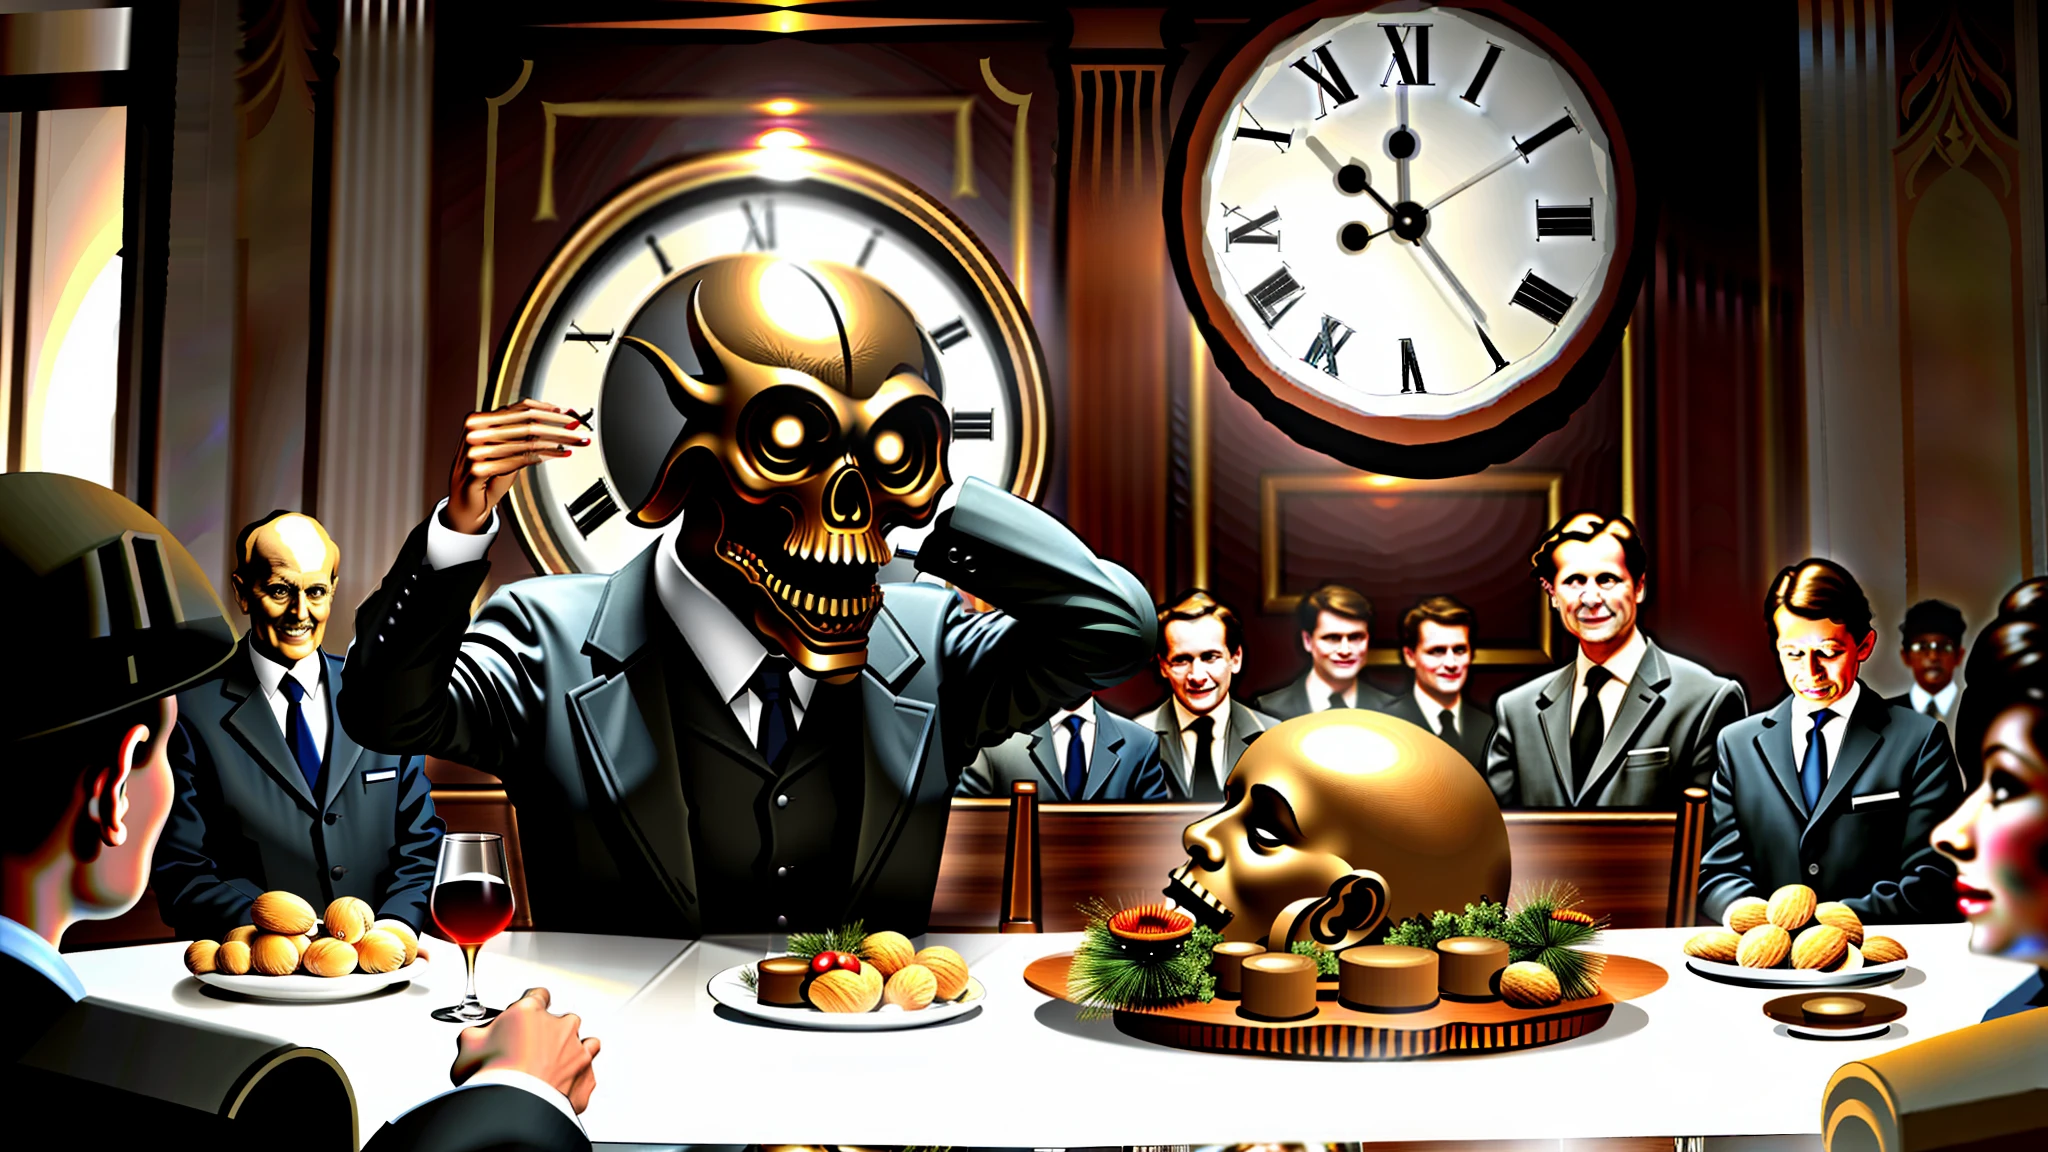 Bourgeois, Menschen an einem Tisch essen, reiche Leute, die menschliche Körper essen, im Hintergrund eine riesige Uhr